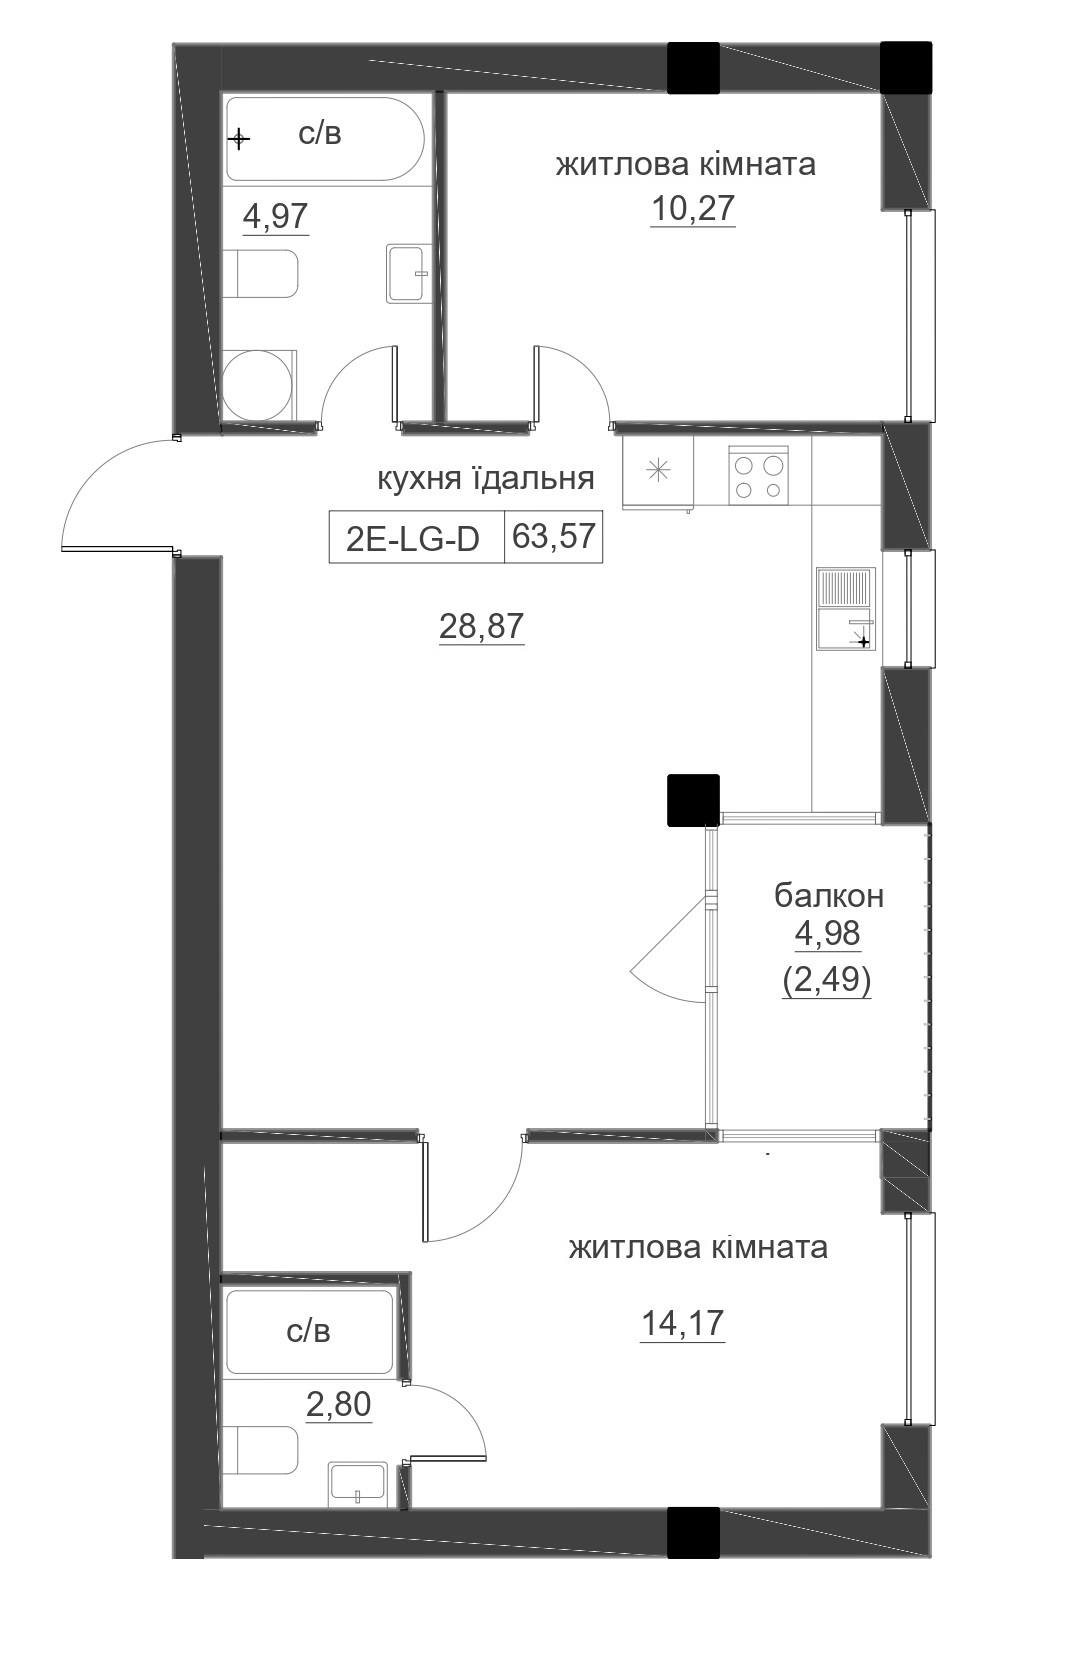 Планування 2-к квартира площею 63.57м2, LR-005-05/0006.